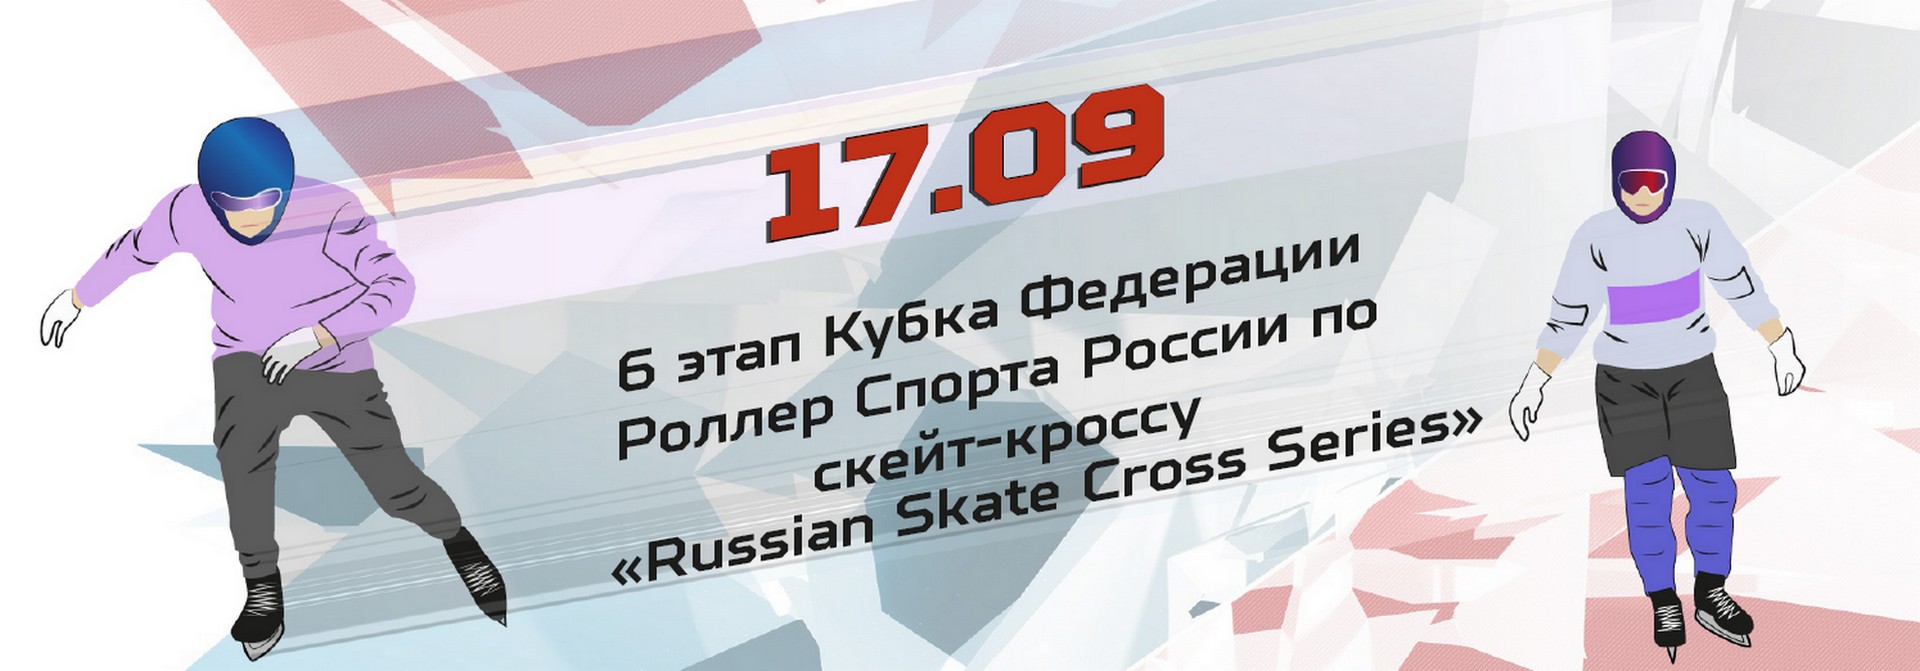 6 этап Кубка Федерации Роллер Спорта России по скейт-кроссу «Russian Skate Cross Series»